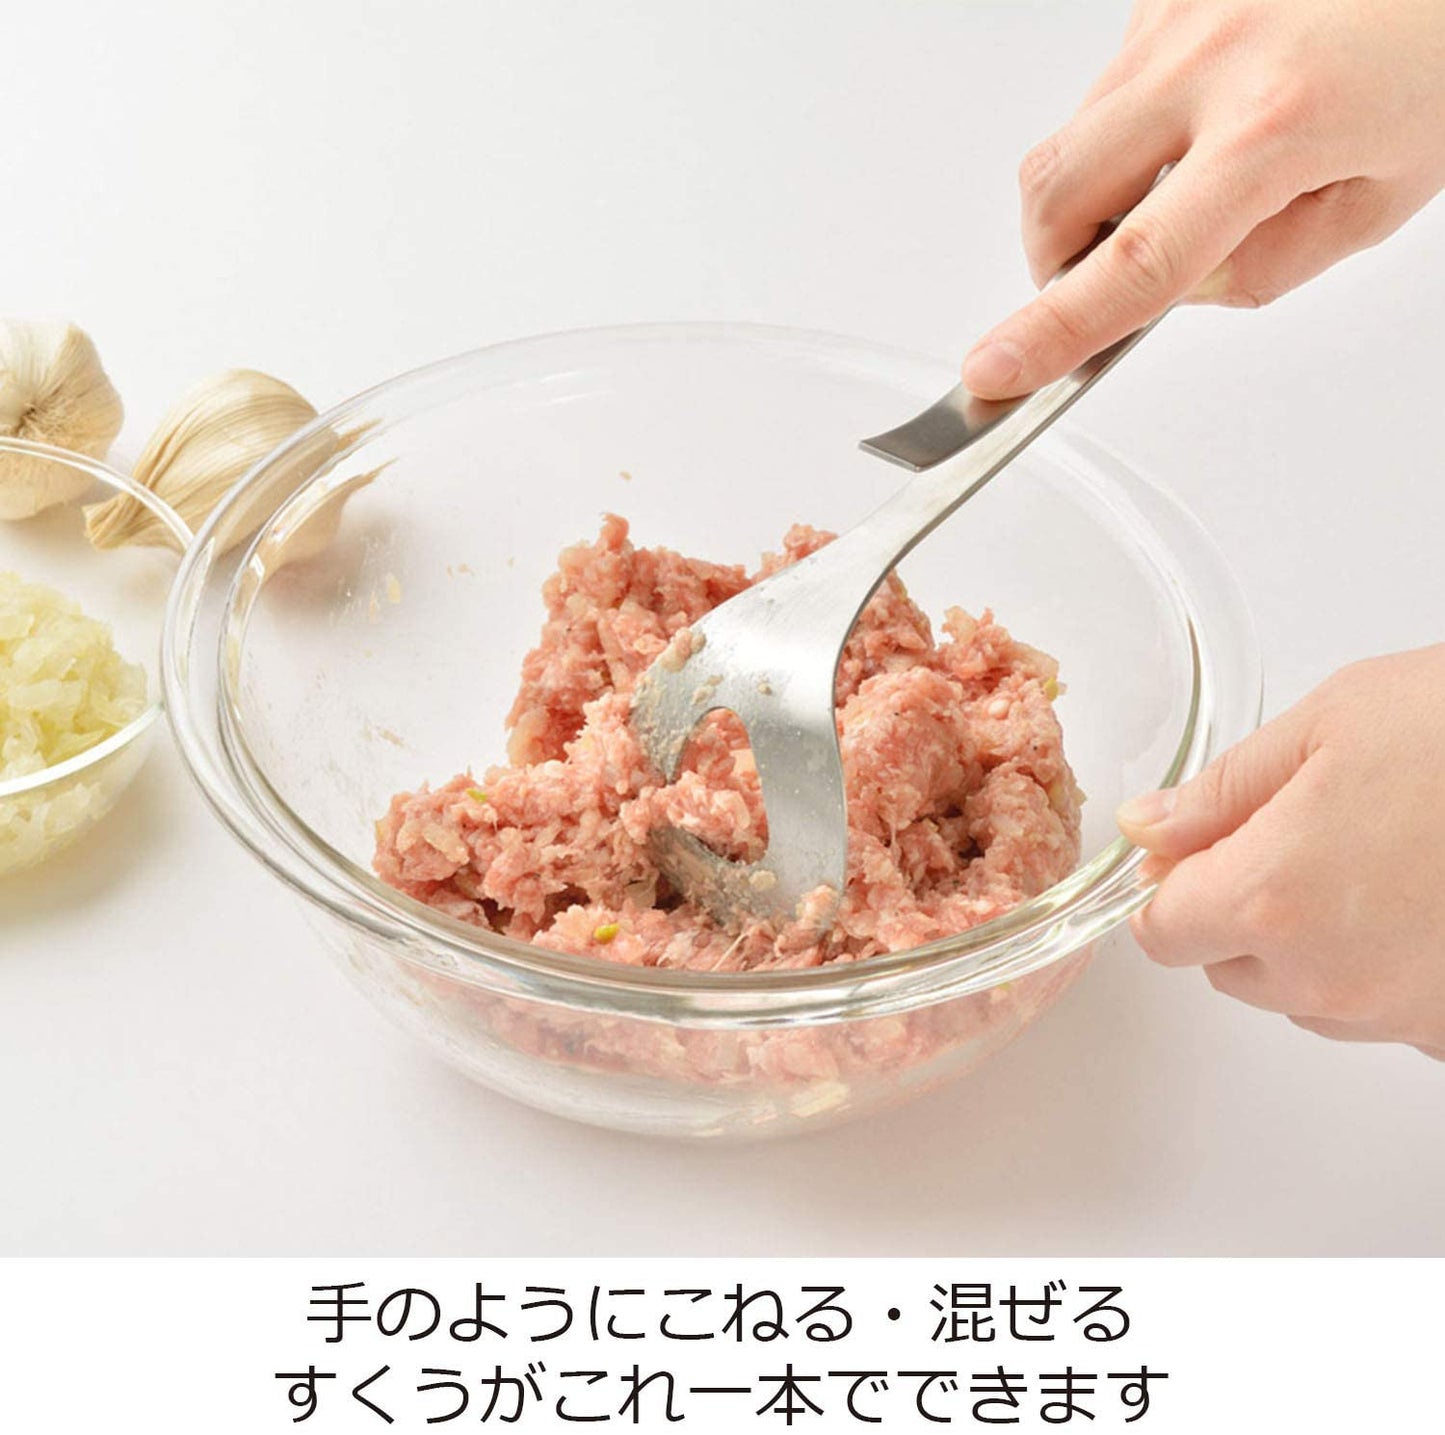 【預購】日本製 擠絞肉丸不銹鋼勺子